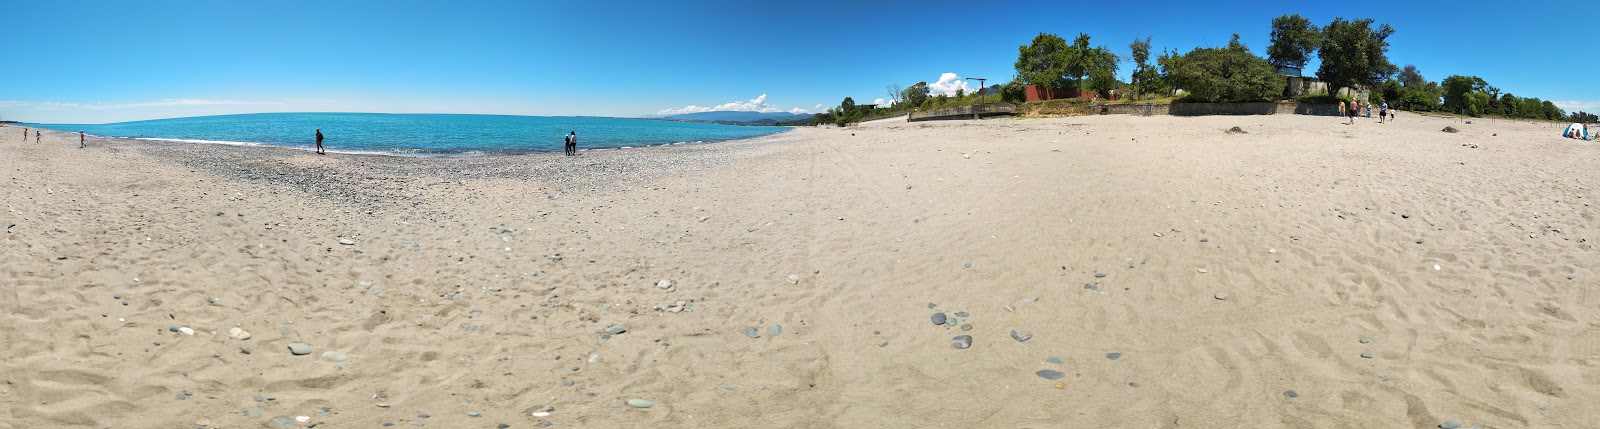 Zdjęcie Tkhubuni beach z proste i długie